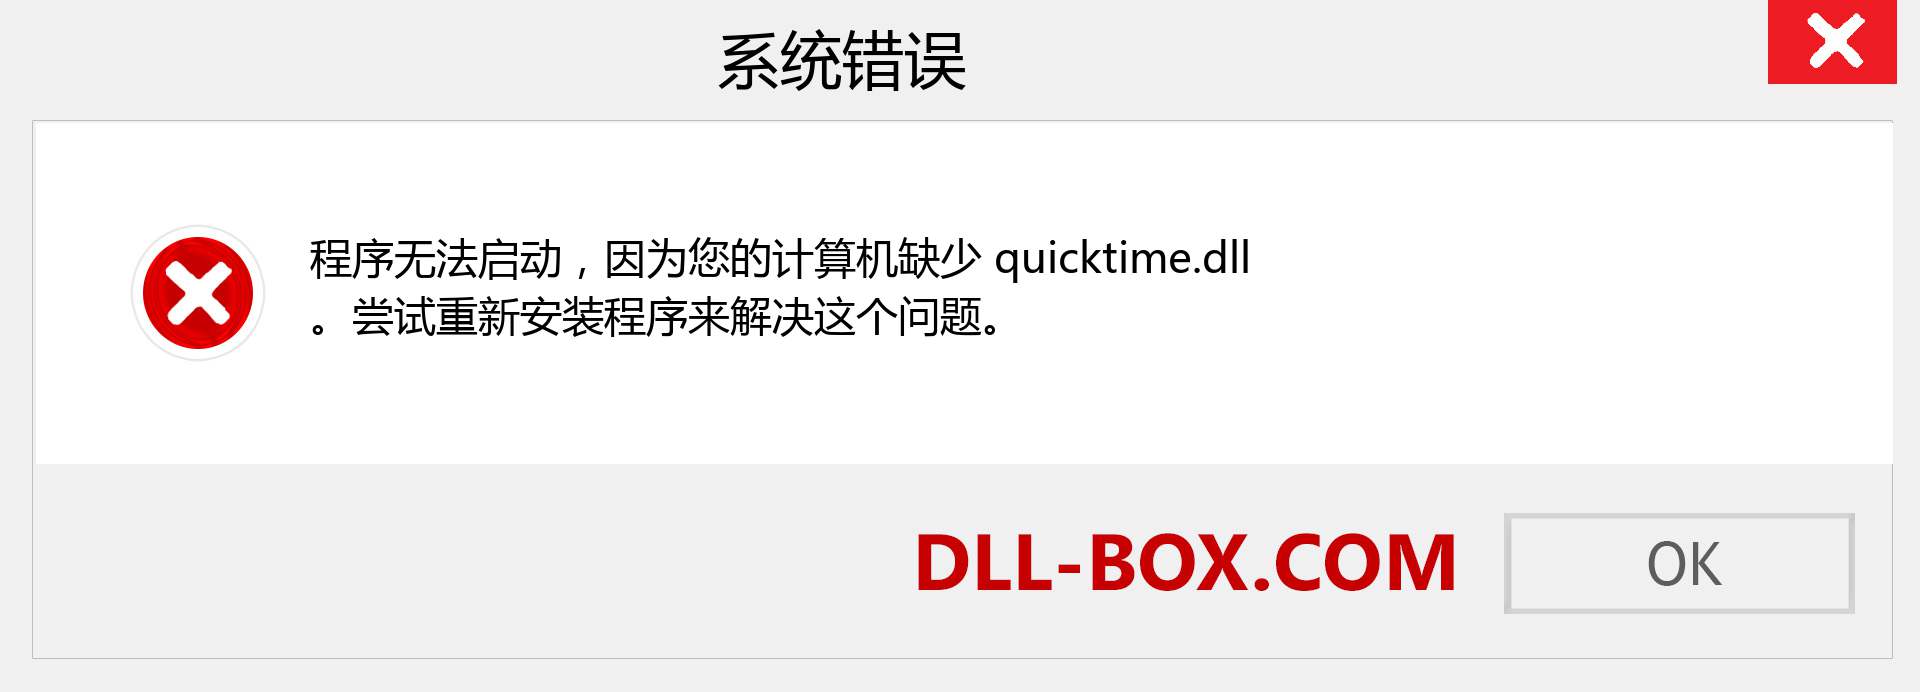 quicktime.dll 文件丢失？。 适用于 Windows 7、8、10 的下载 - 修复 Windows、照片、图像上的 quicktime dll 丢失错误